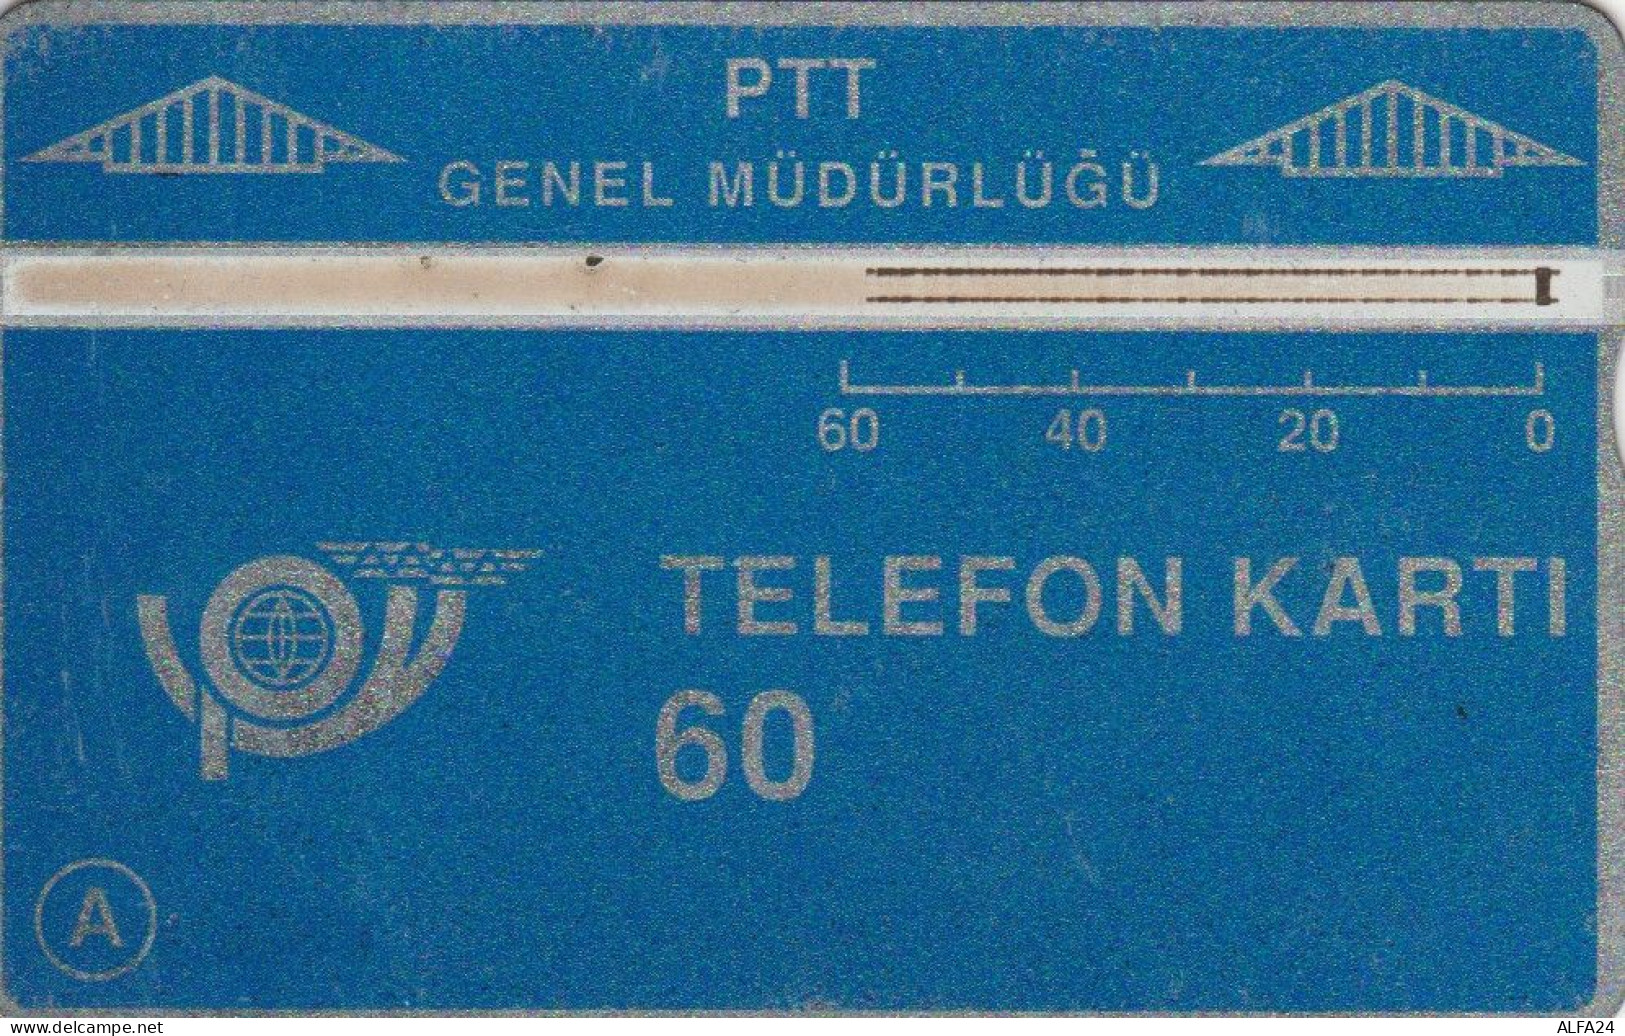 PHONE CARD TURCHIA -PRIME EMISSIONI (E64.16.7 - Turchia